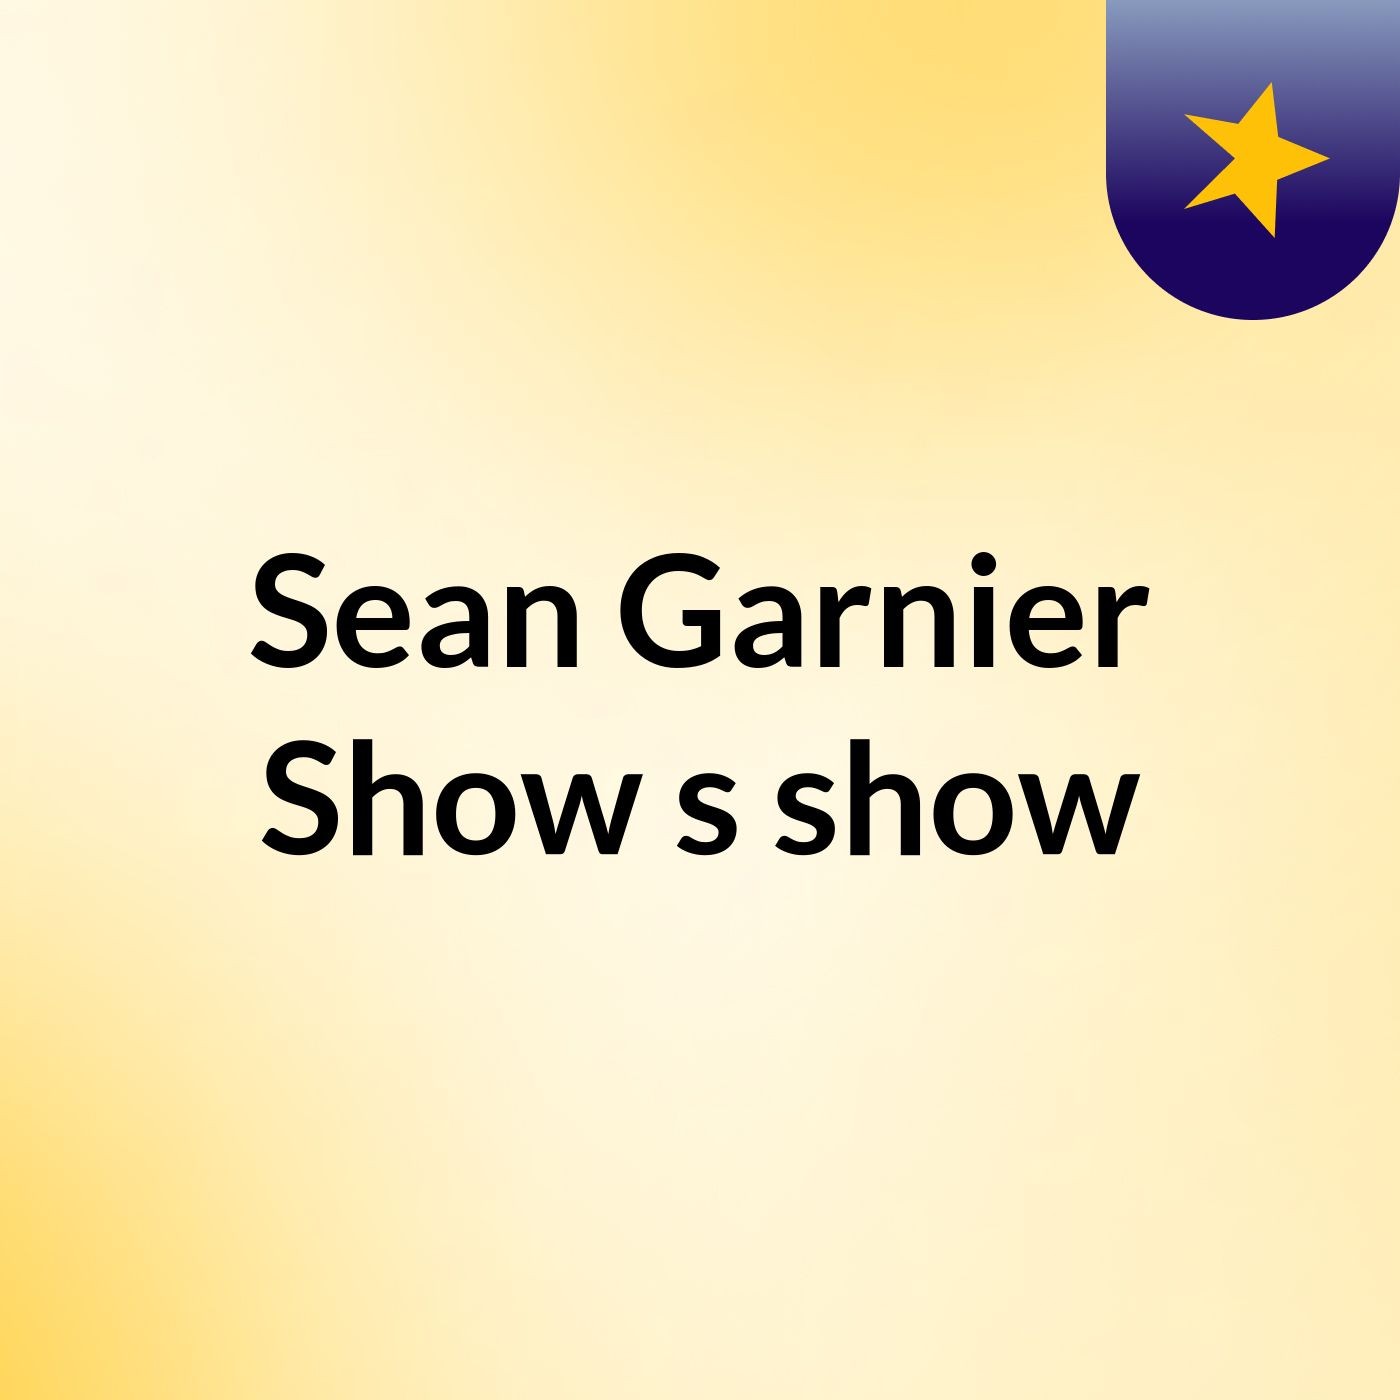 Sean Garnier Show's show